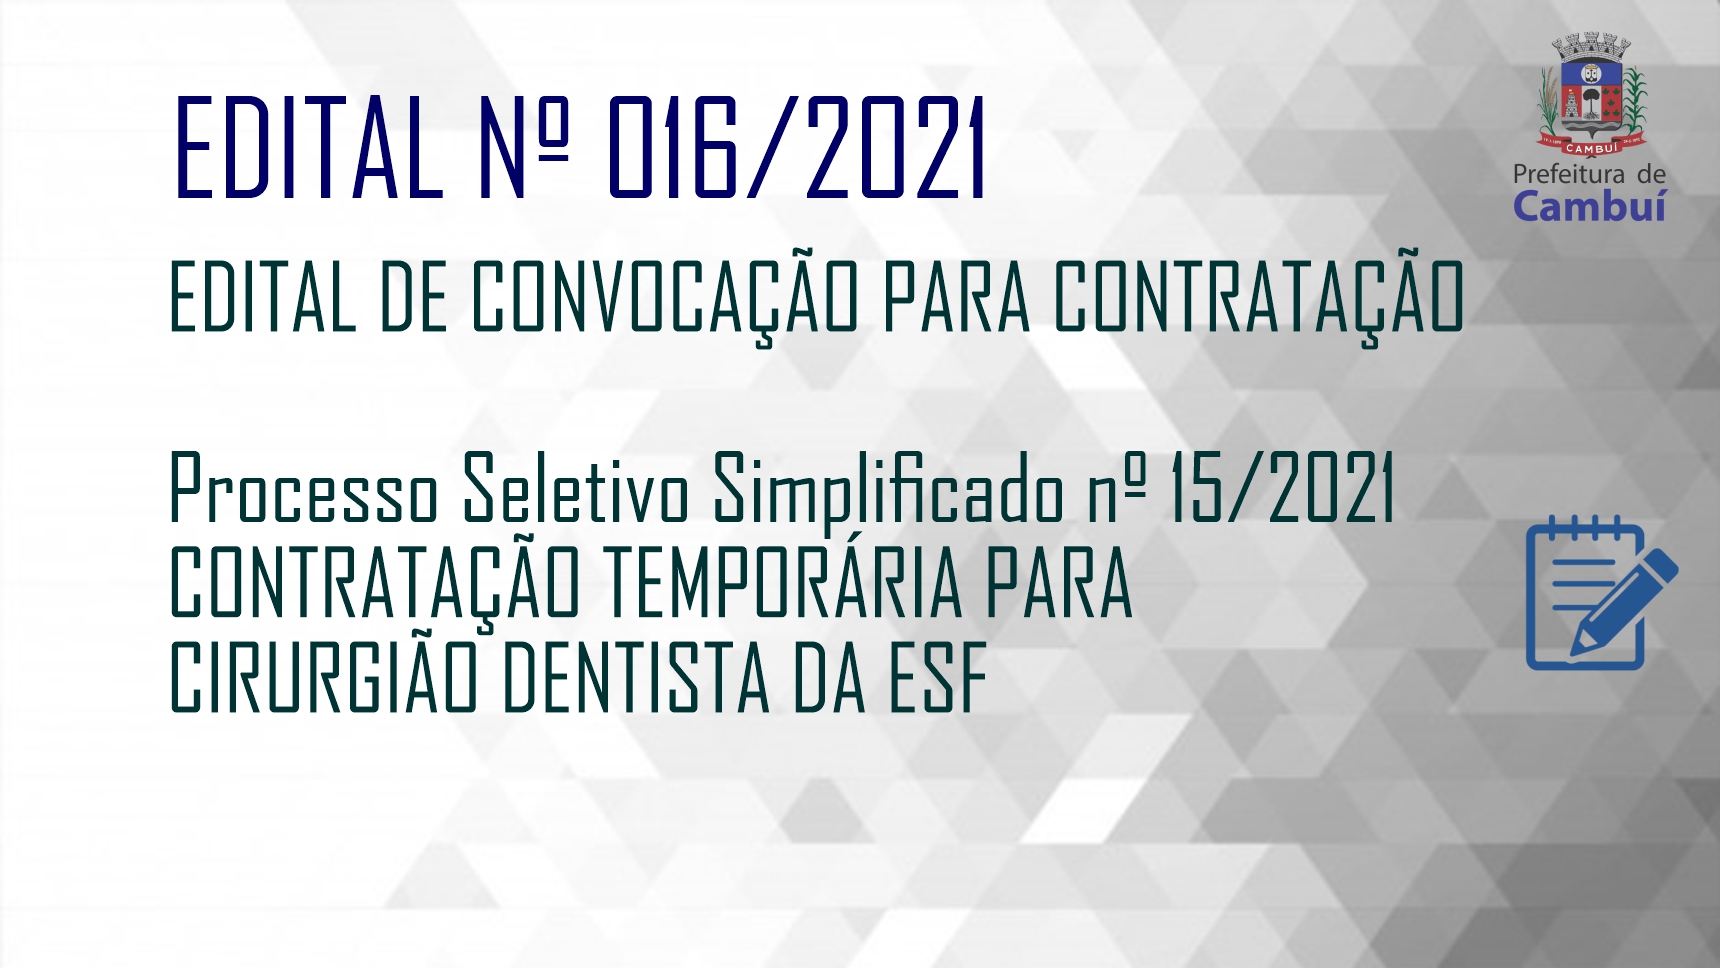 CLASSIFICAÇÃO – EDITAL 016/2021 – CIRURGIÃO DENTISTA